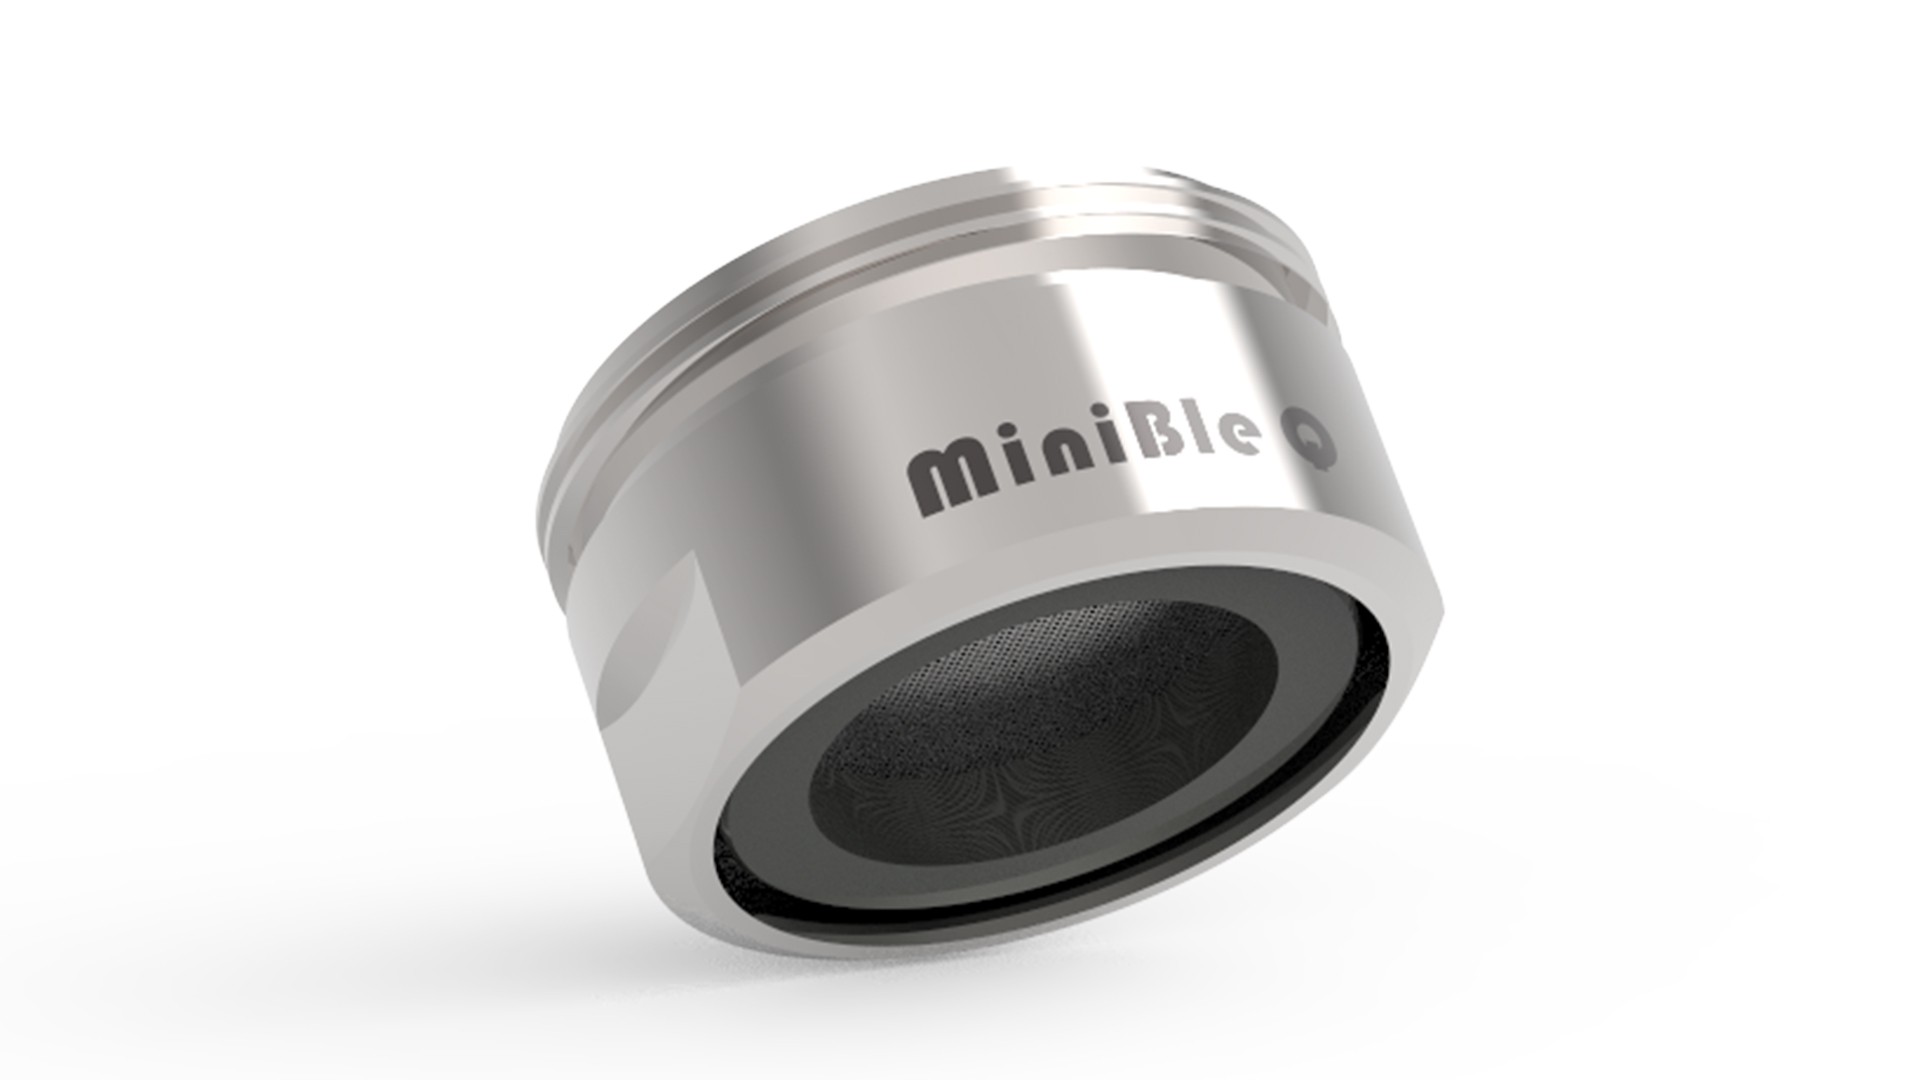 MiniBle Q Microbubble Aerator